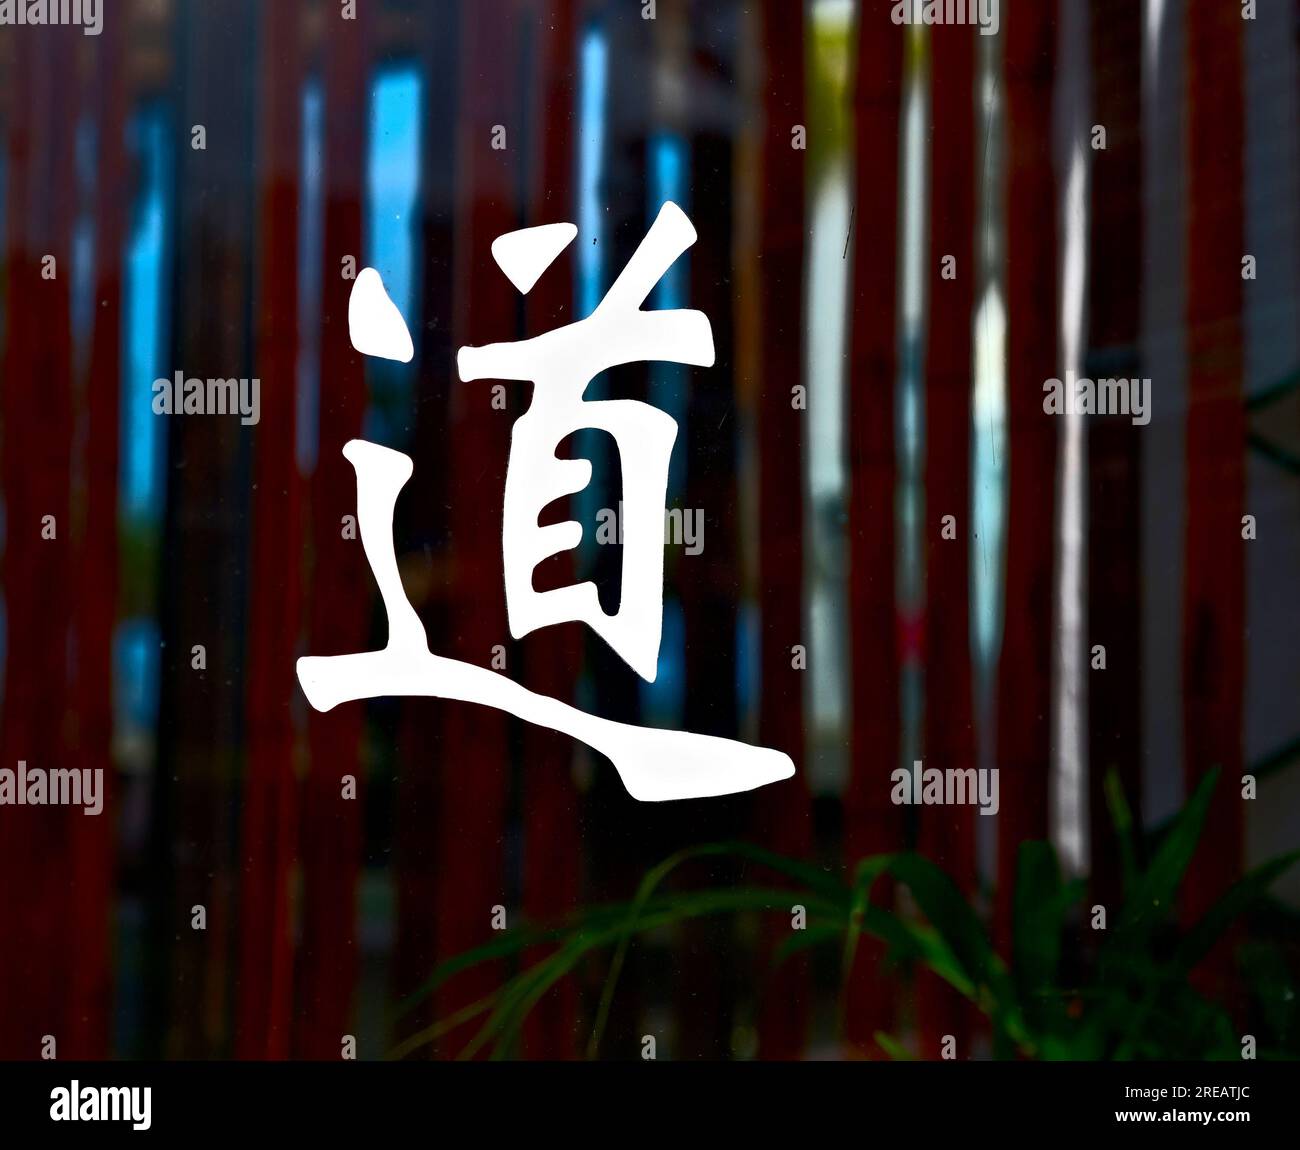 Chinesisches Ideogramm tao / Japanisches Wort do (Englisch: Weg, Straße oder Methode). Isoliert auf einer Glasplatte mit dunklem Bambusblütenhintergrund. Stockfoto